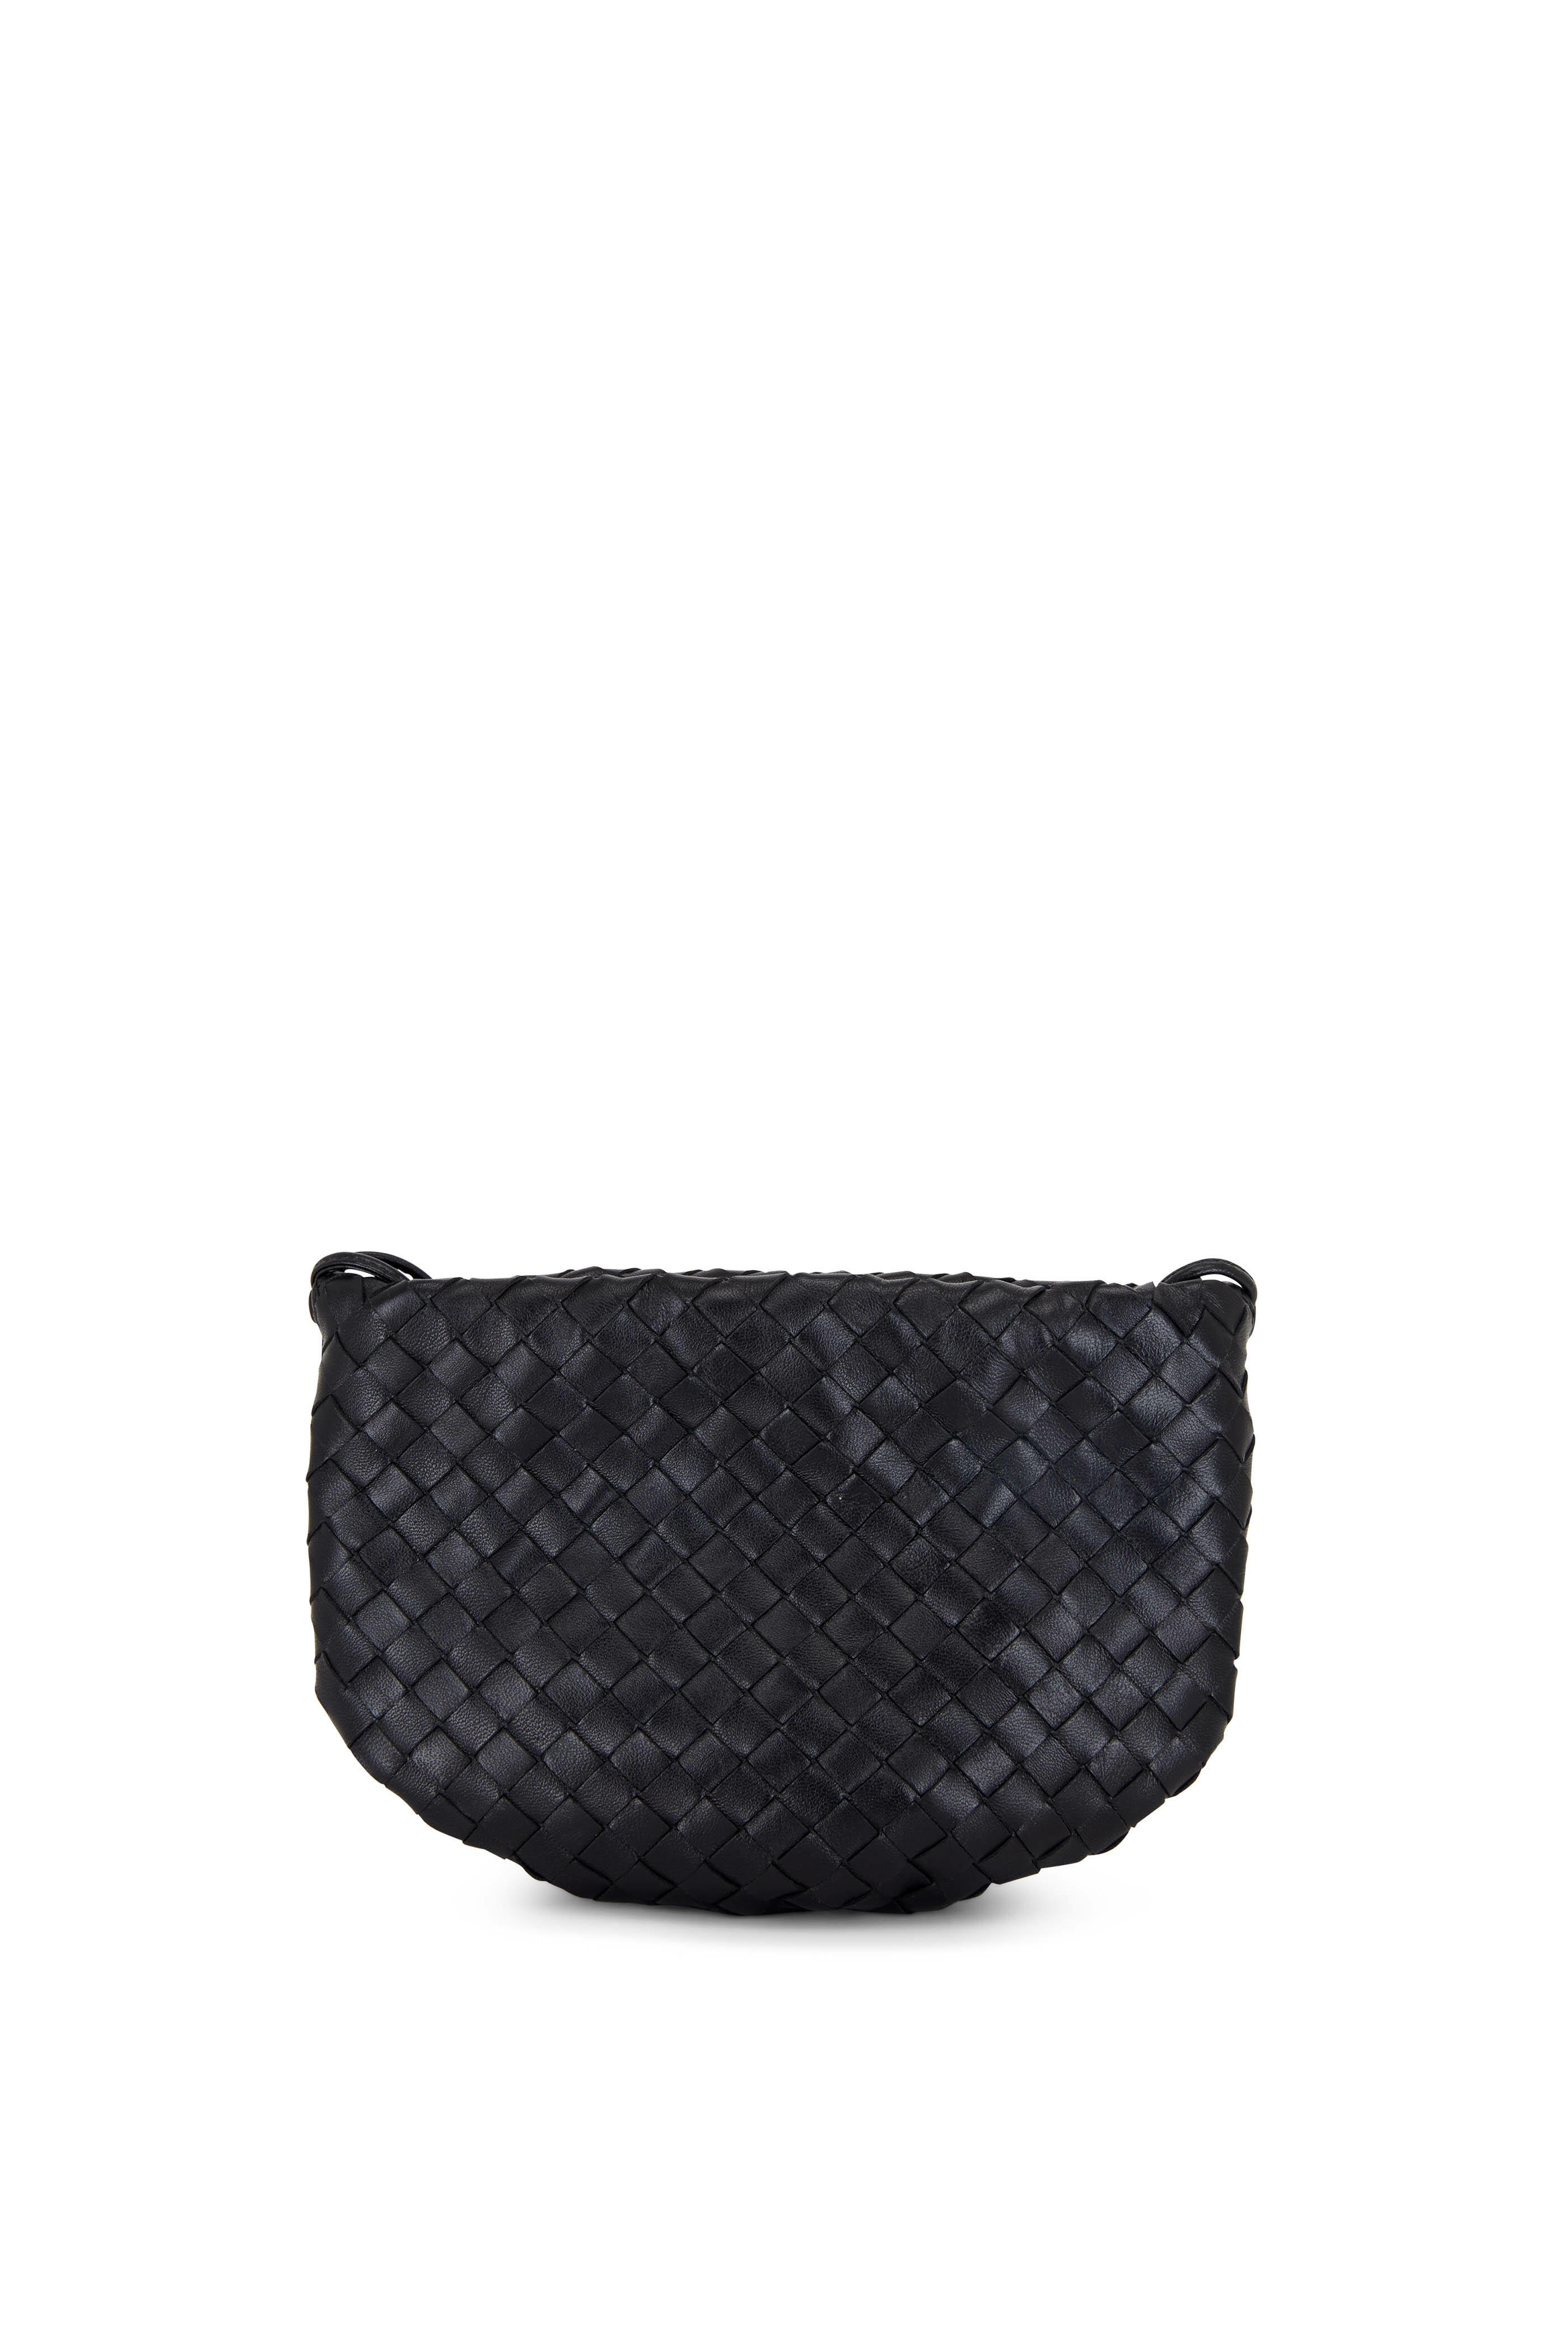 Bottega Veneta - Nodini Black Woven Leather Small Bag